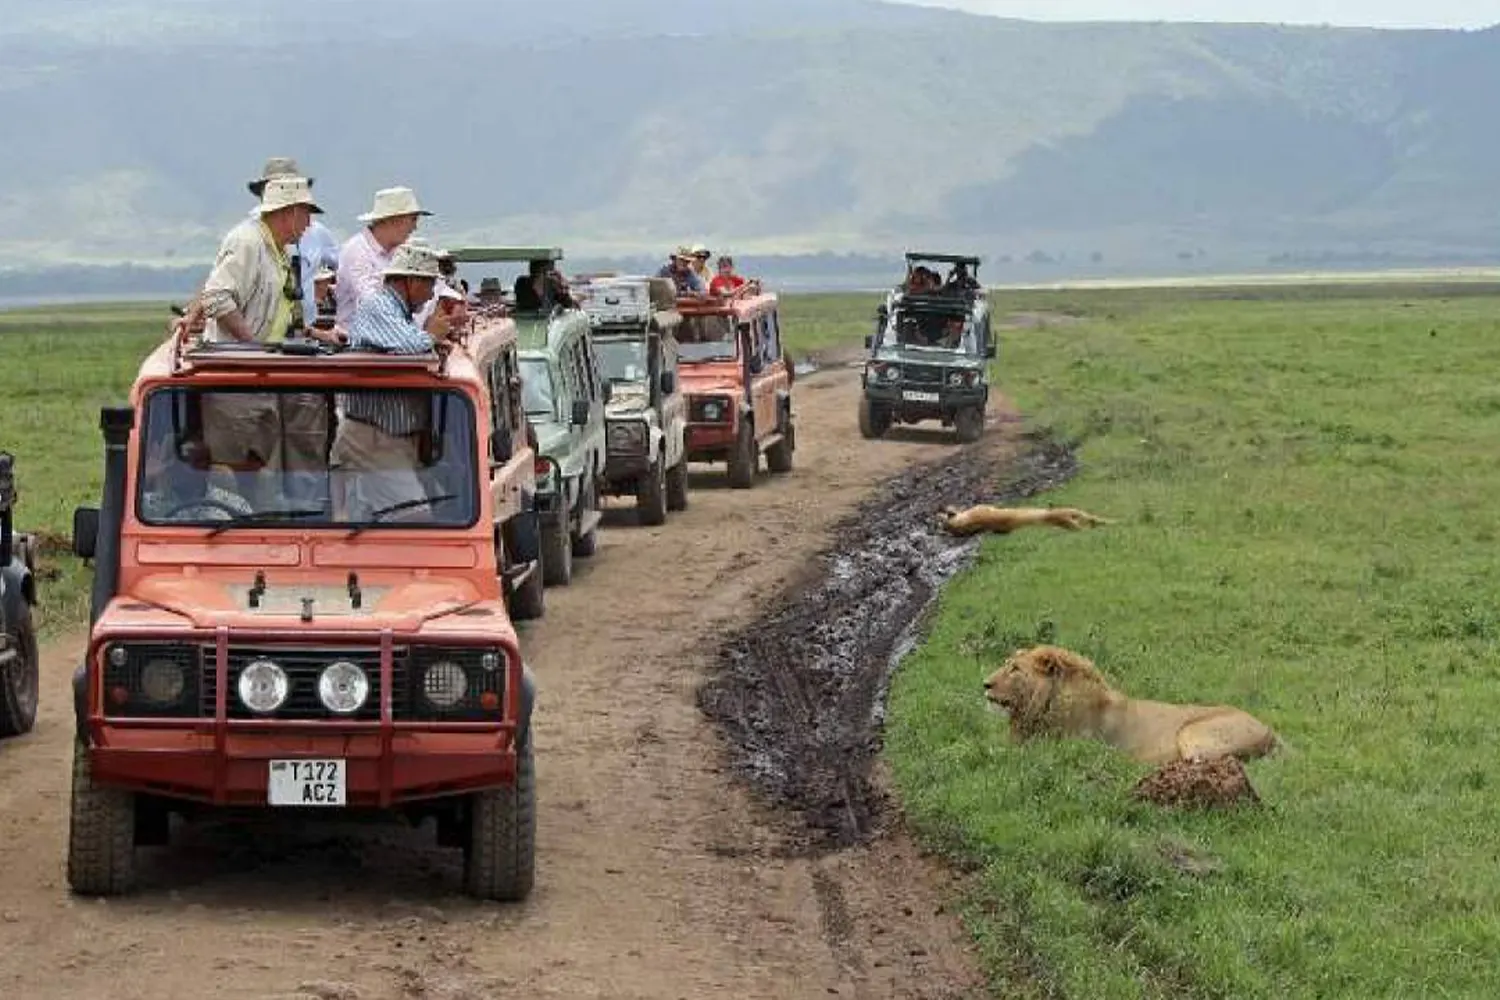 Ngorongoro Day Trip Joining Safari